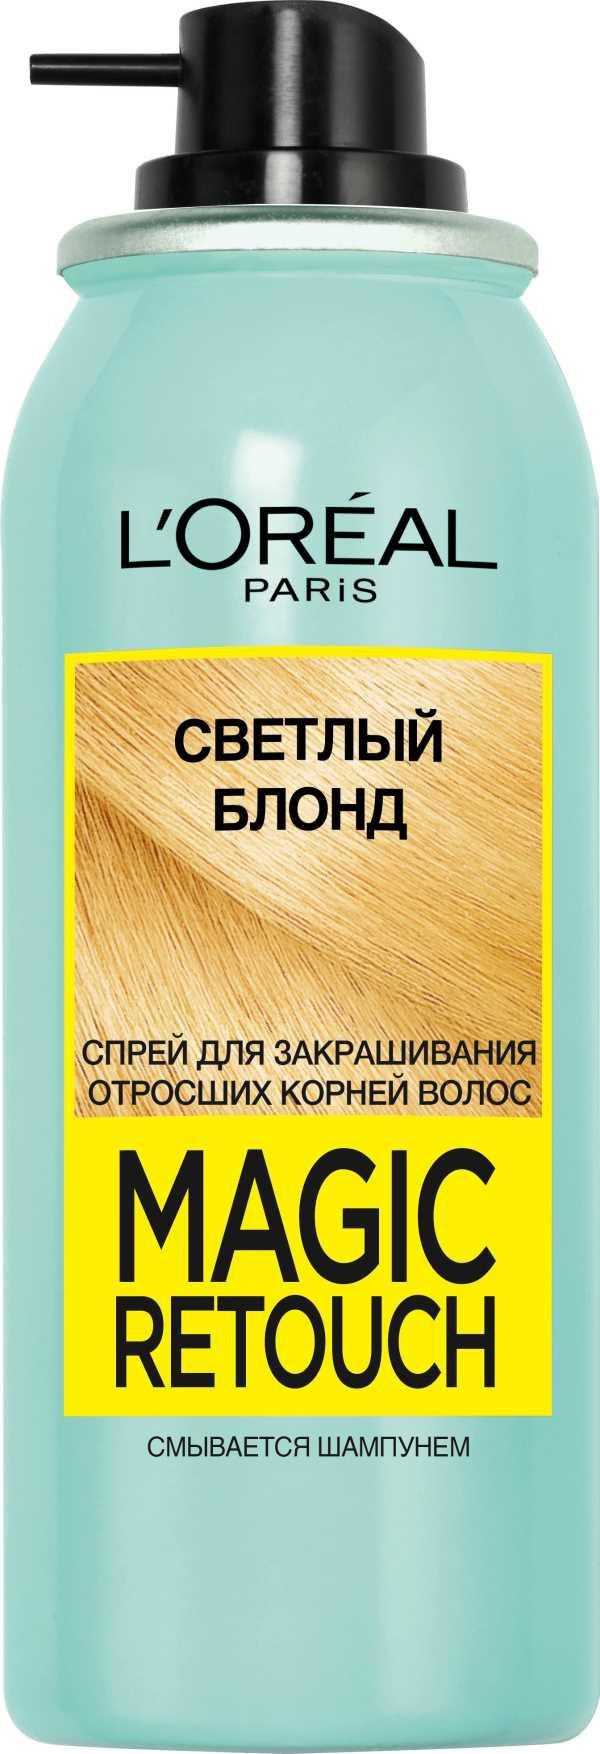 Спрей для корней волос: тонирующее средство для быстрого окрашивания волос